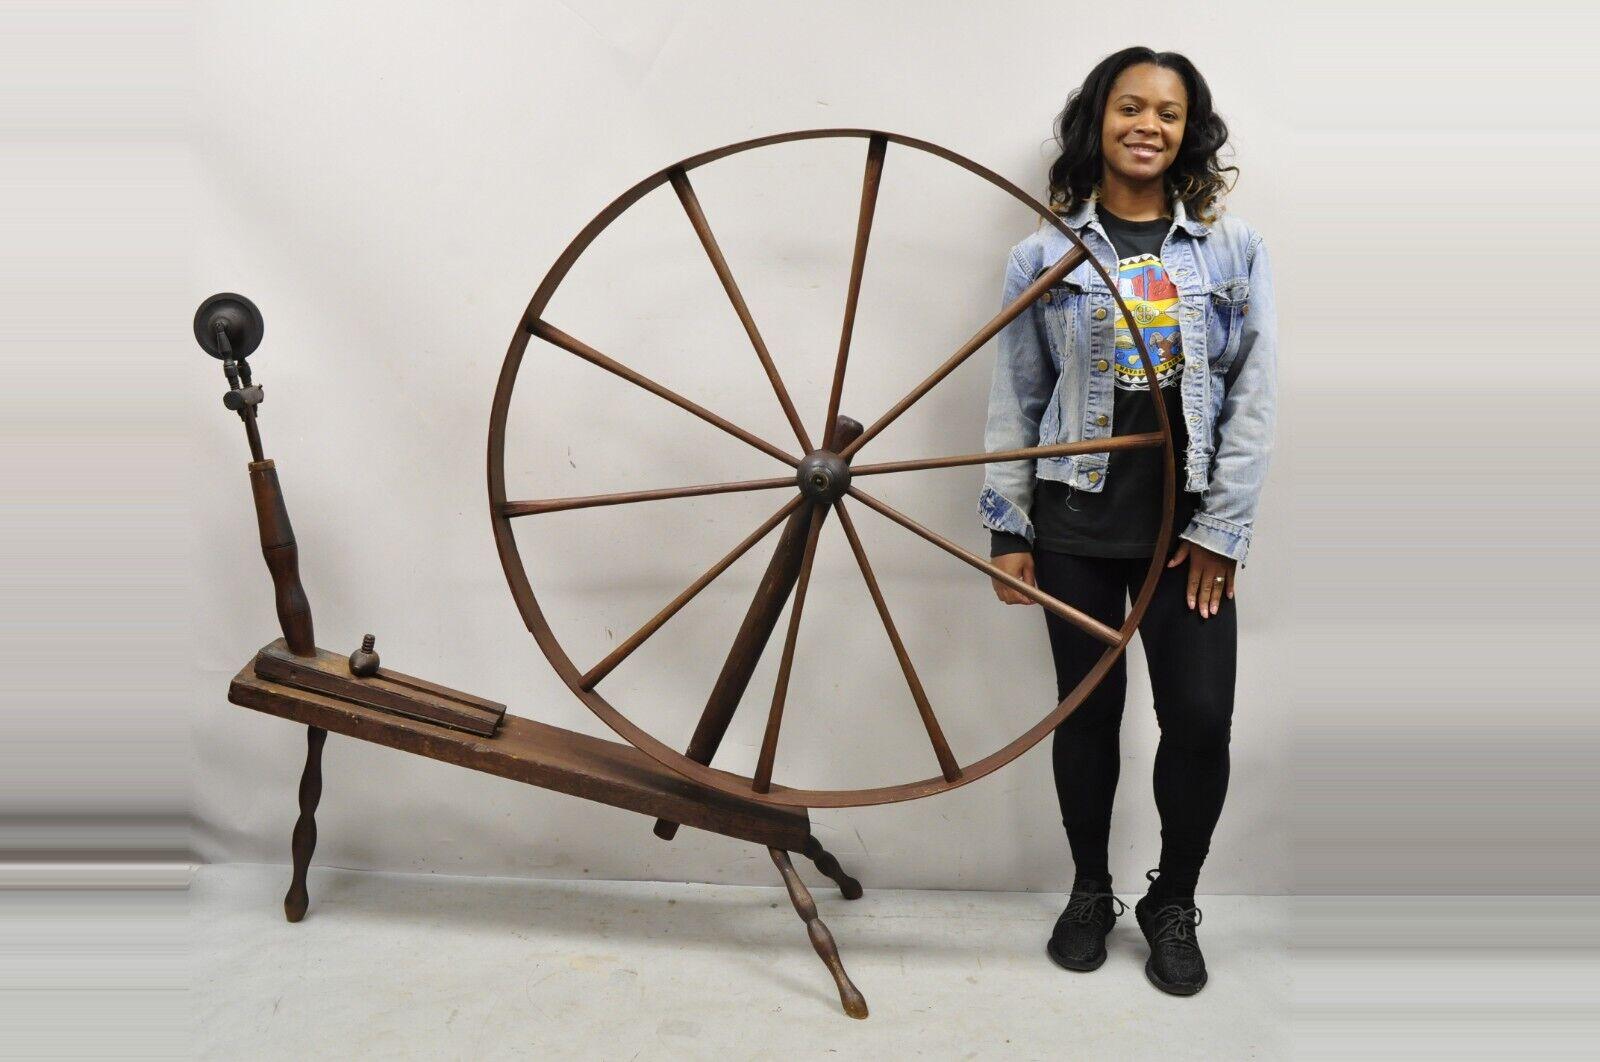 Antique rouet américain primitif colonial en bois. Cet article est doté d'une roue de 46 pouces de diamètre, d'une construction en bois massif, d'un beau grain de bois, d'un très bel article ancien, d'une fabrication américaine de qualité, d'un